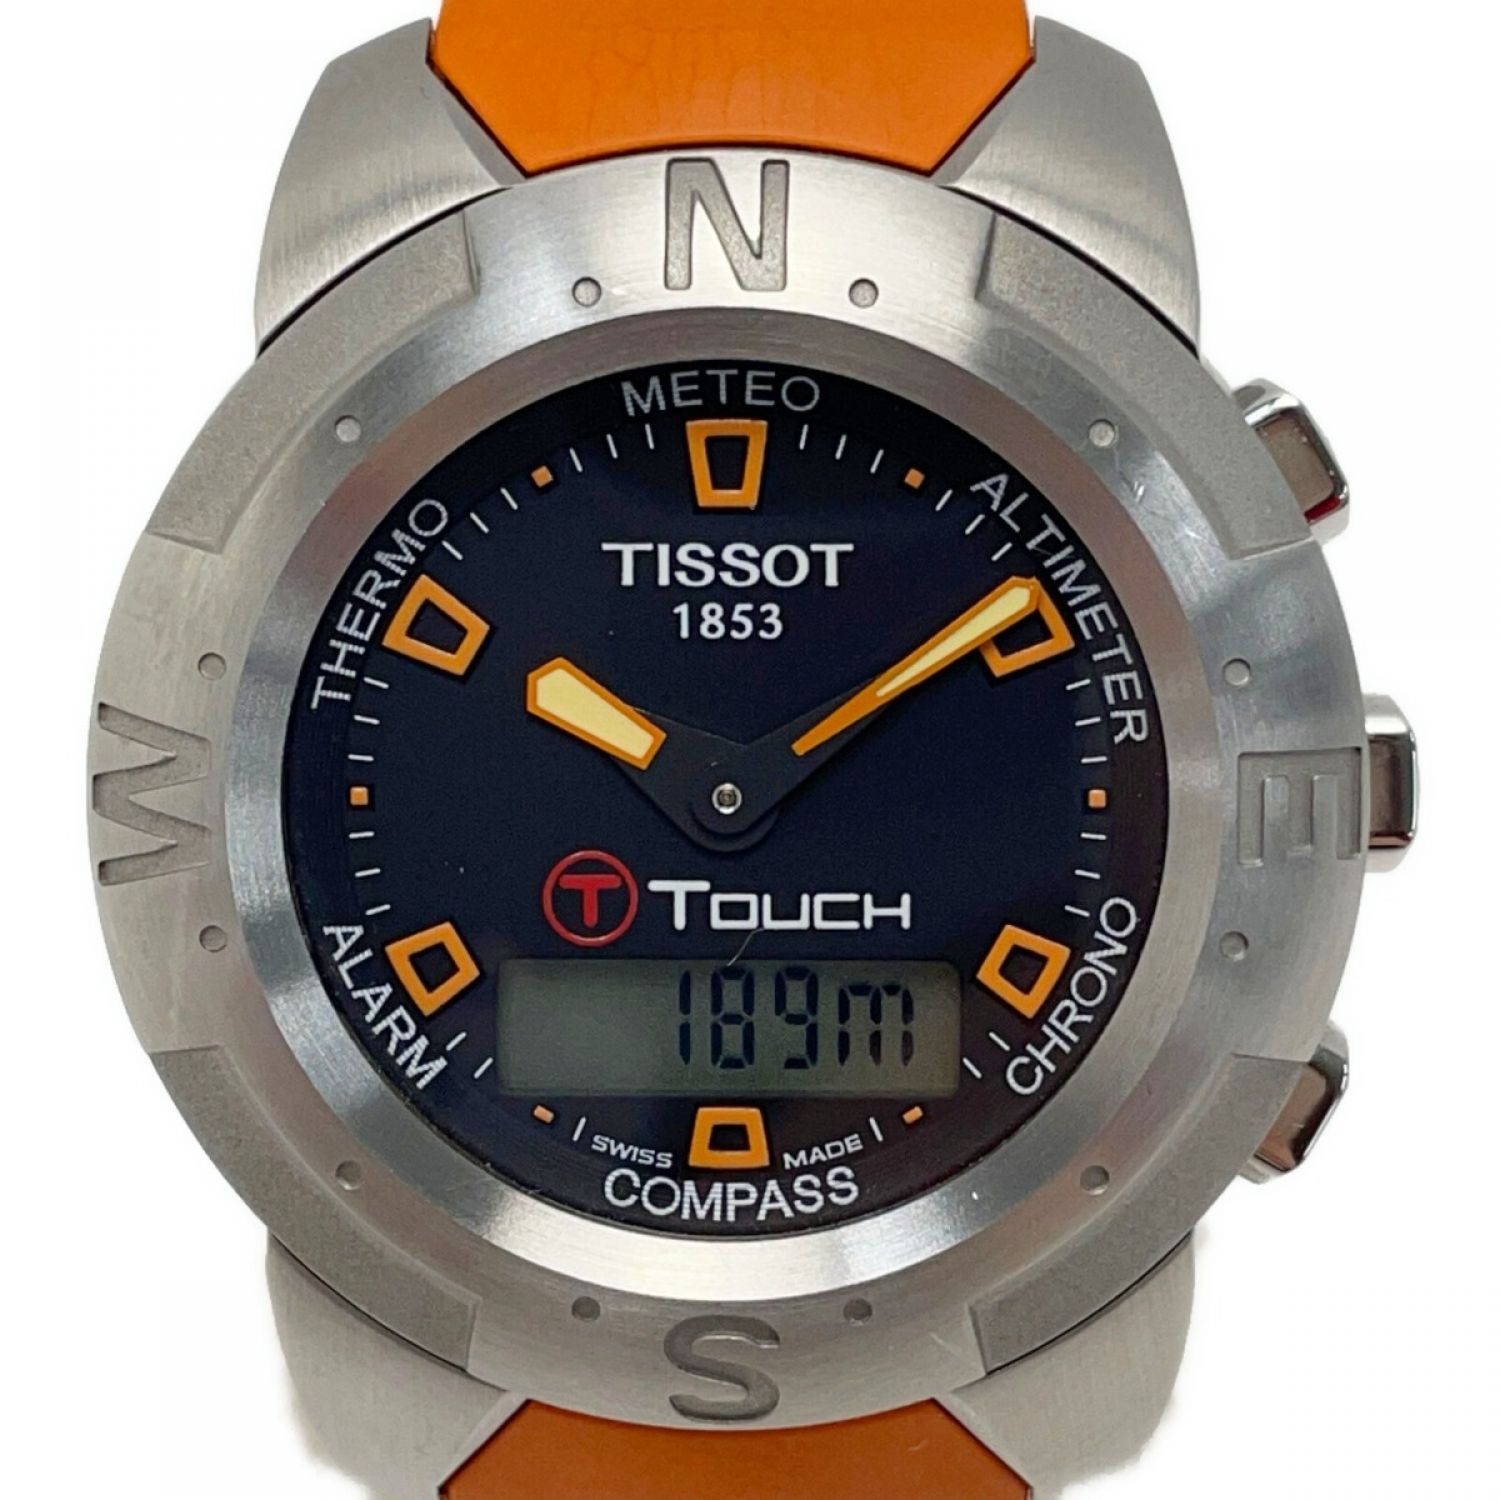 TISSOT ティソ touch タッチ デジアナ 腕時計すみっこの時計ショップ